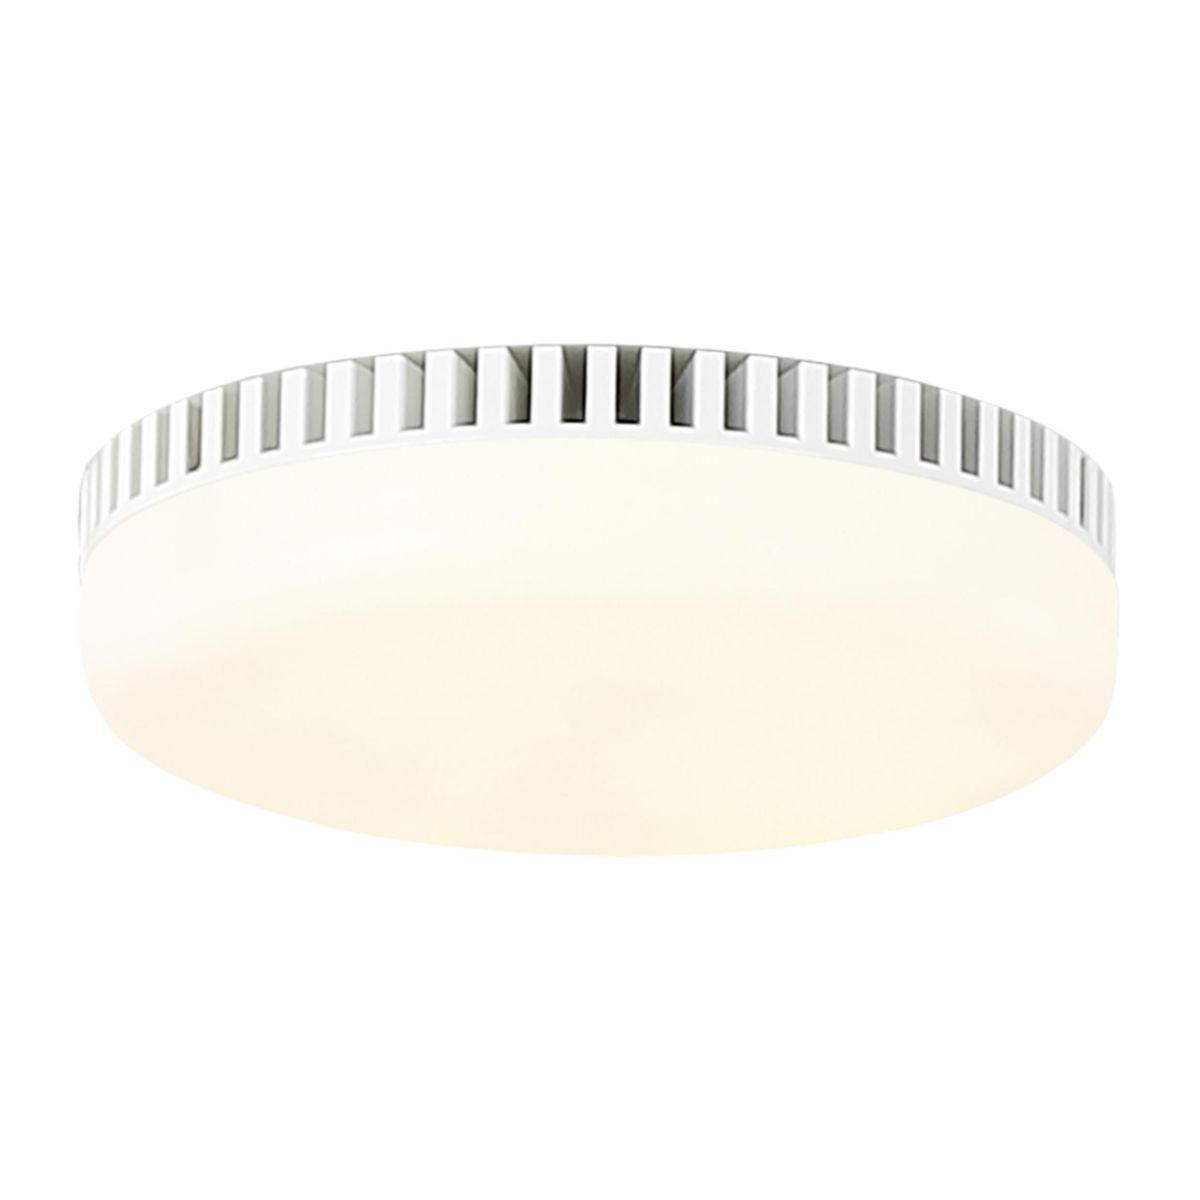 Universal LED Ceiling Fan Light Kit - Bees Lighting